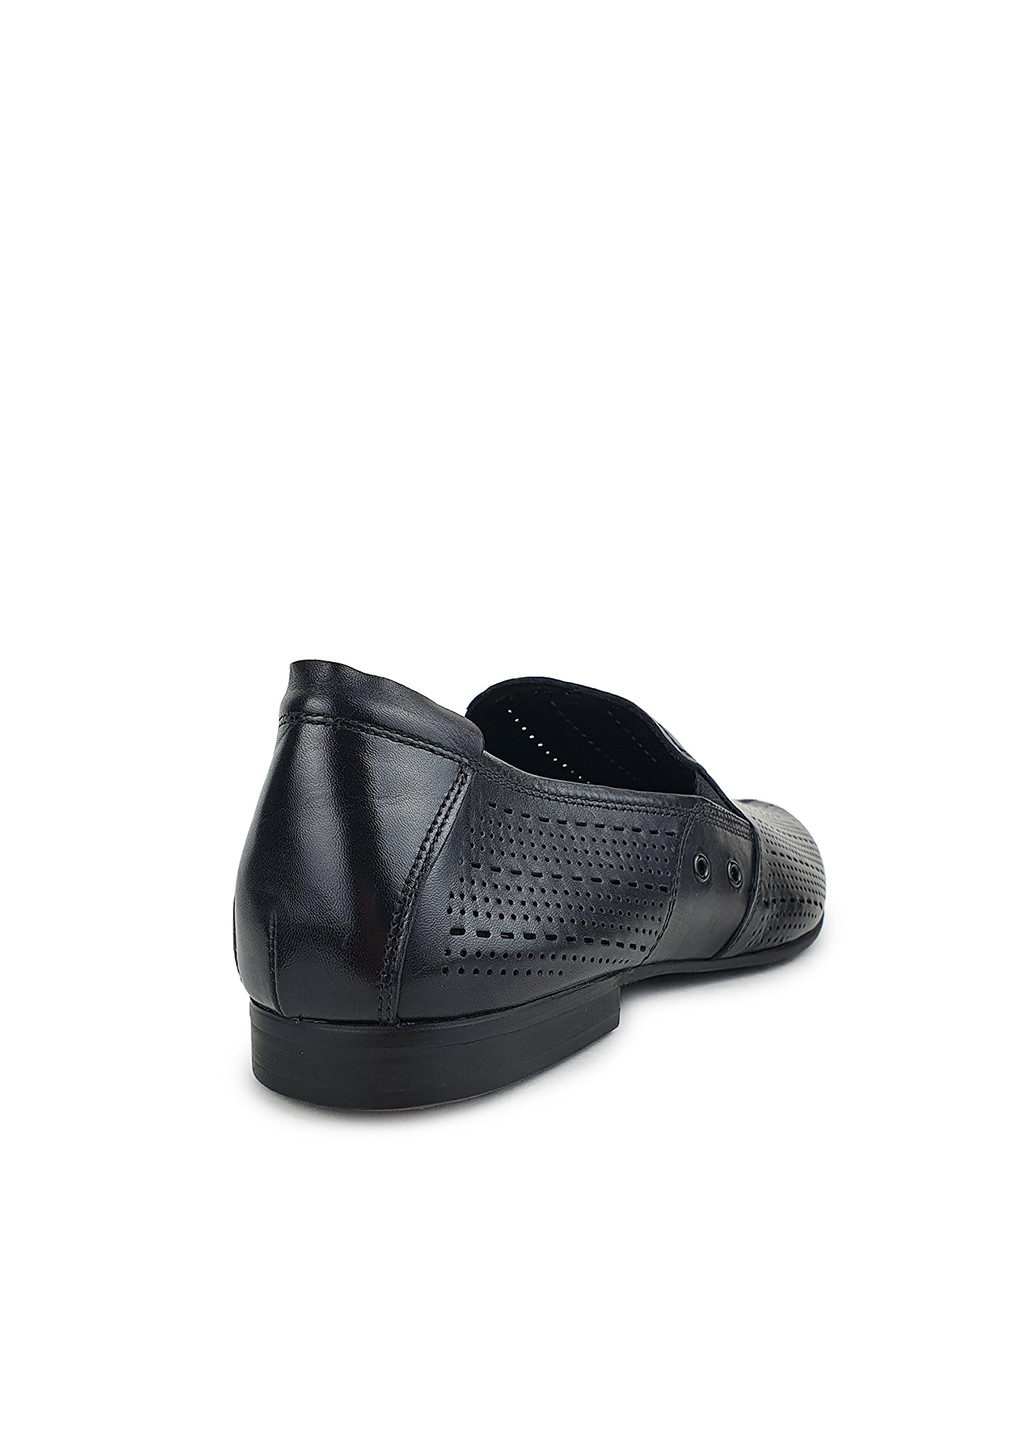 Черные повседневные летние мужские туфли классические из натуральной кожи черные,berluti, aq4204d-11031,39 Basconi